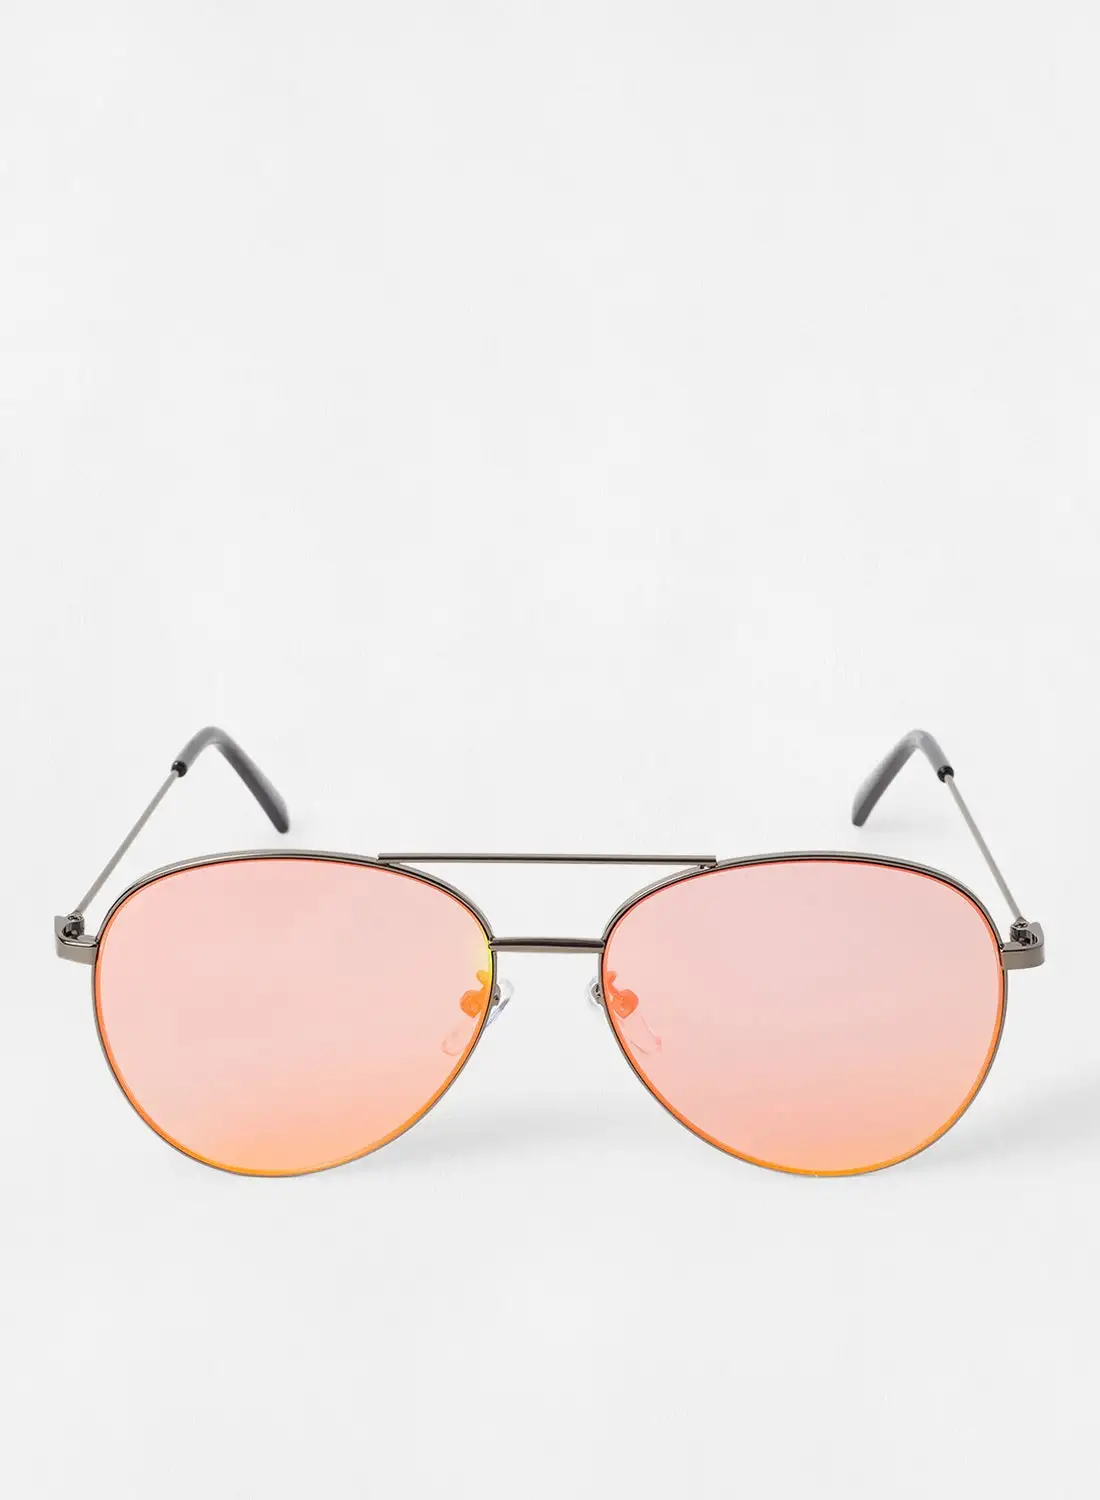 Mohito Women's Aviator Sunglasses 